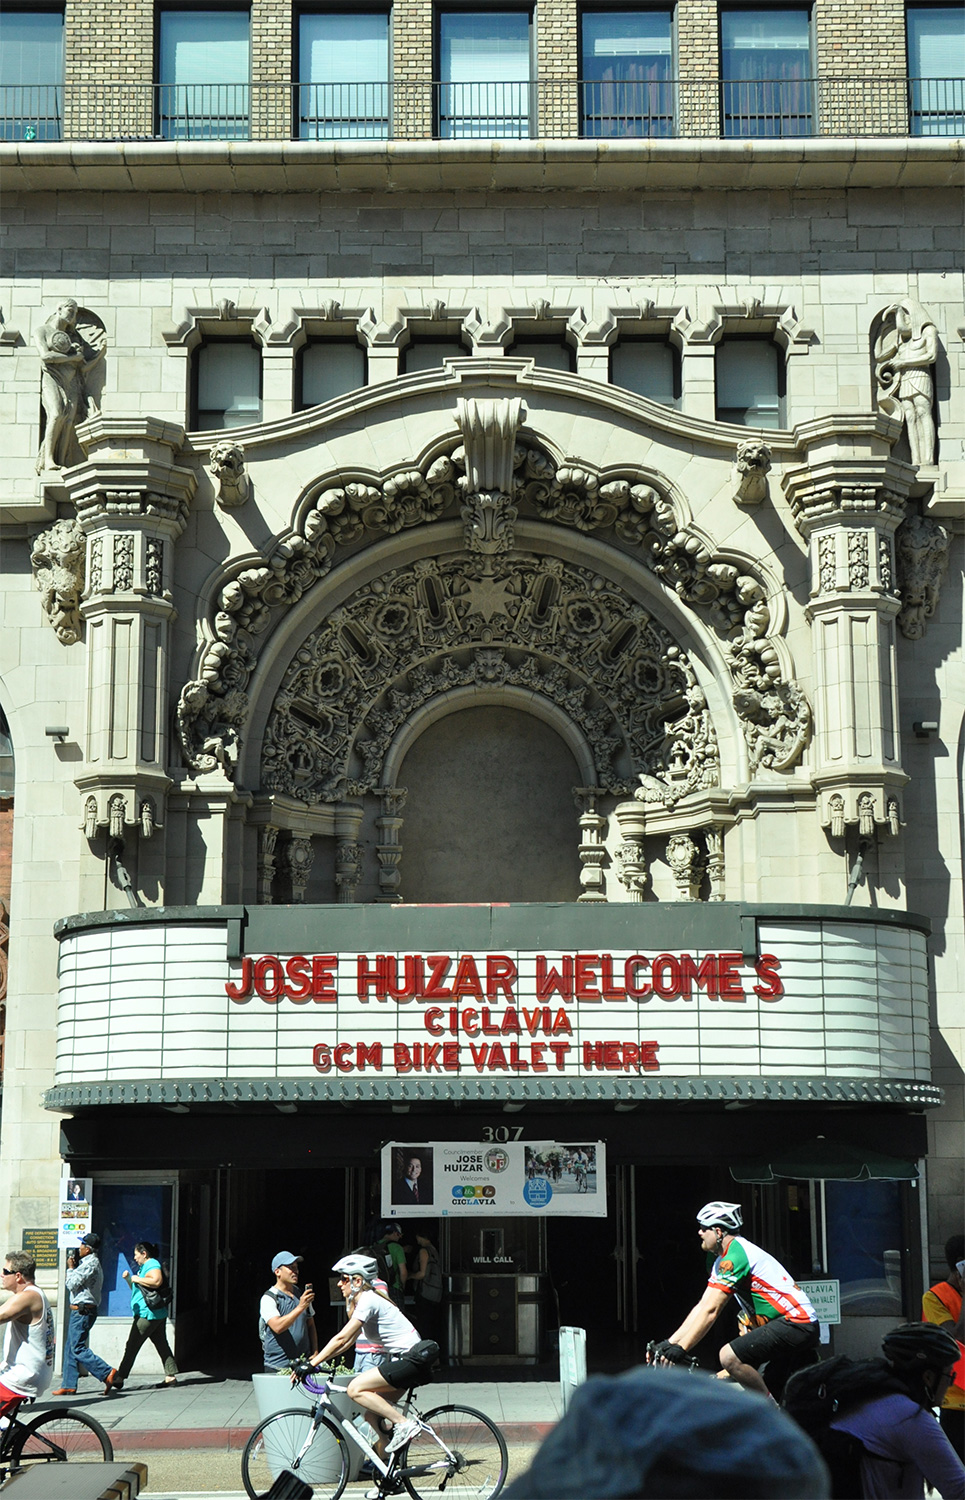 Theater in L.A.